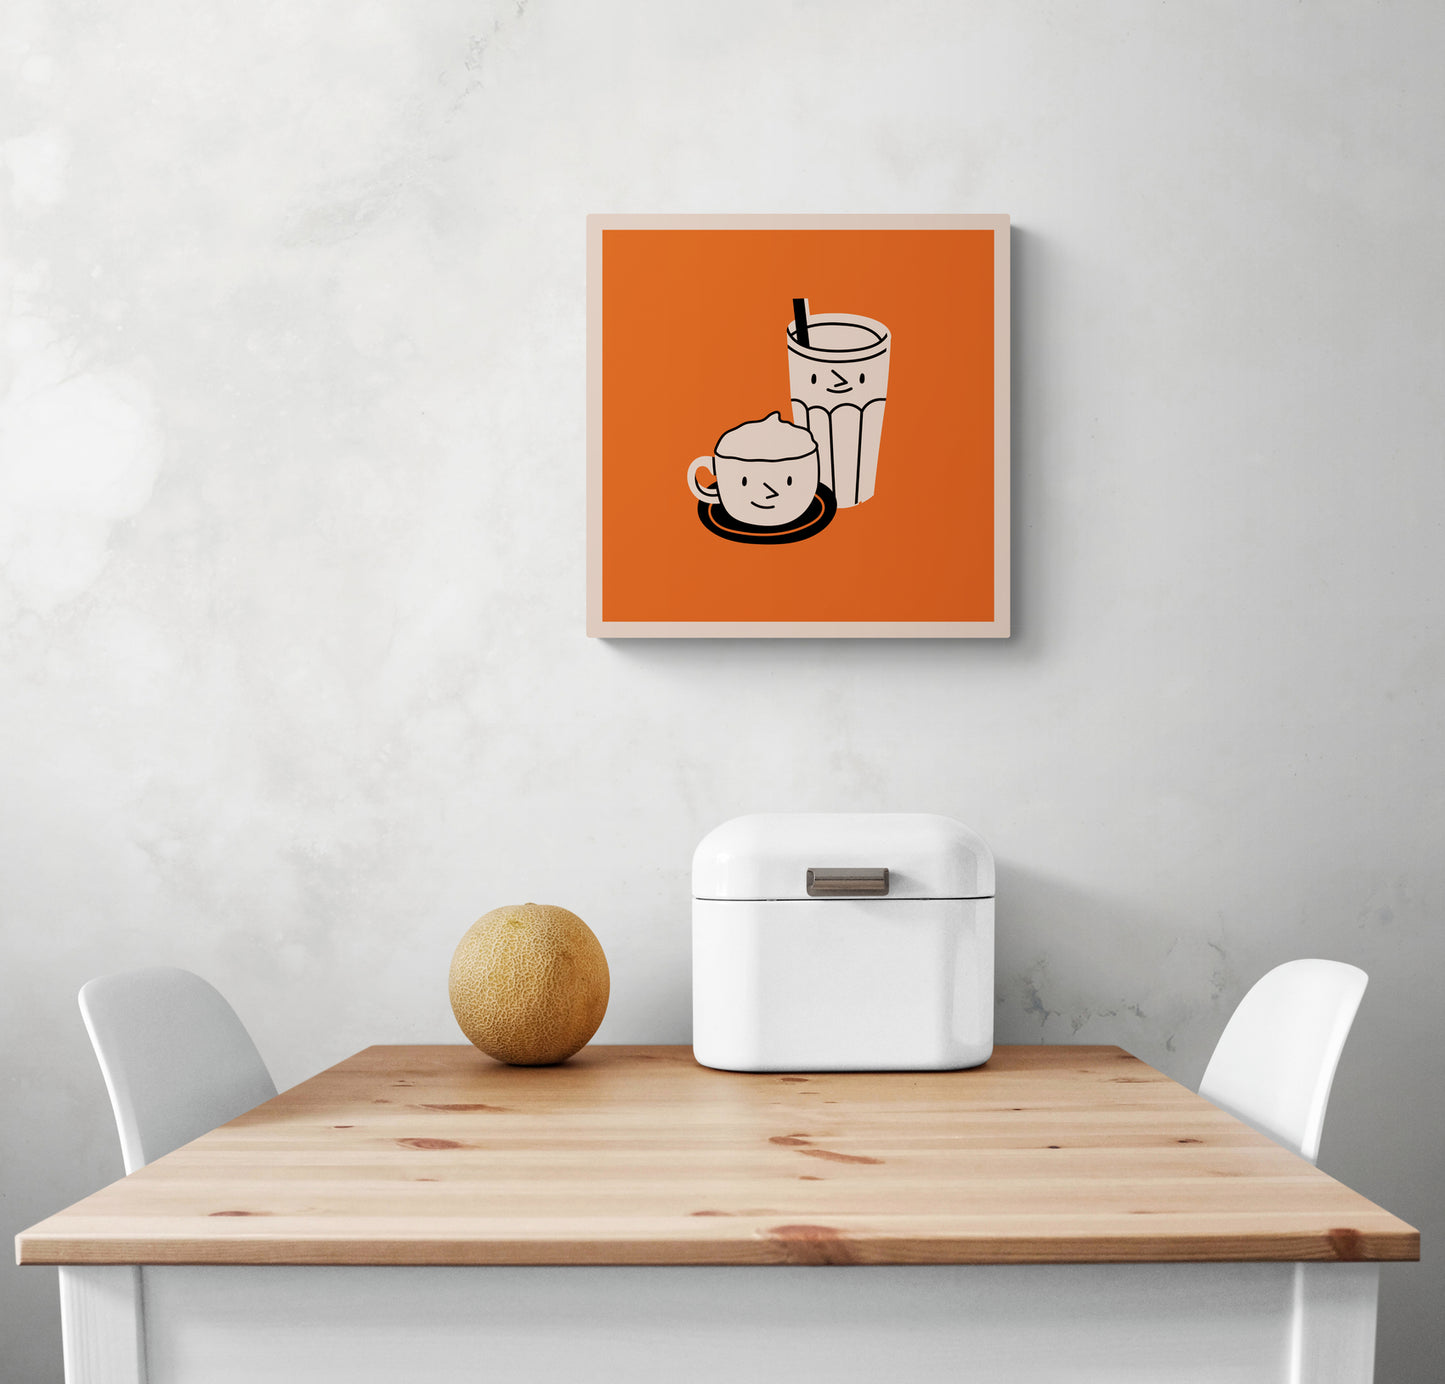  Un Tableau décoration murale orange dans une cuisine blanche. Ce tableau cuisine est placé au-dessus d'une table en bois et deux chaises sont de chaque côté. Une boîte à pain en métal blanc et un melon sont sur la table